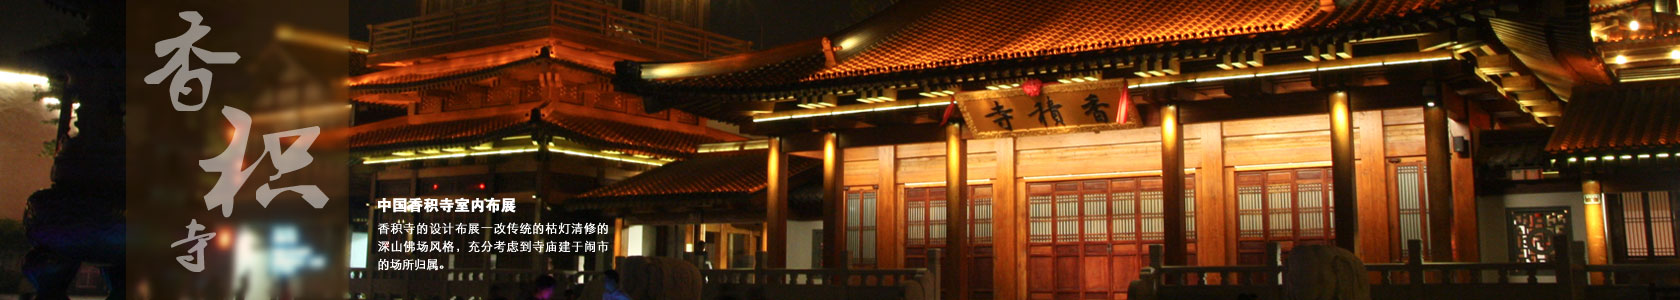 杭州香積寺